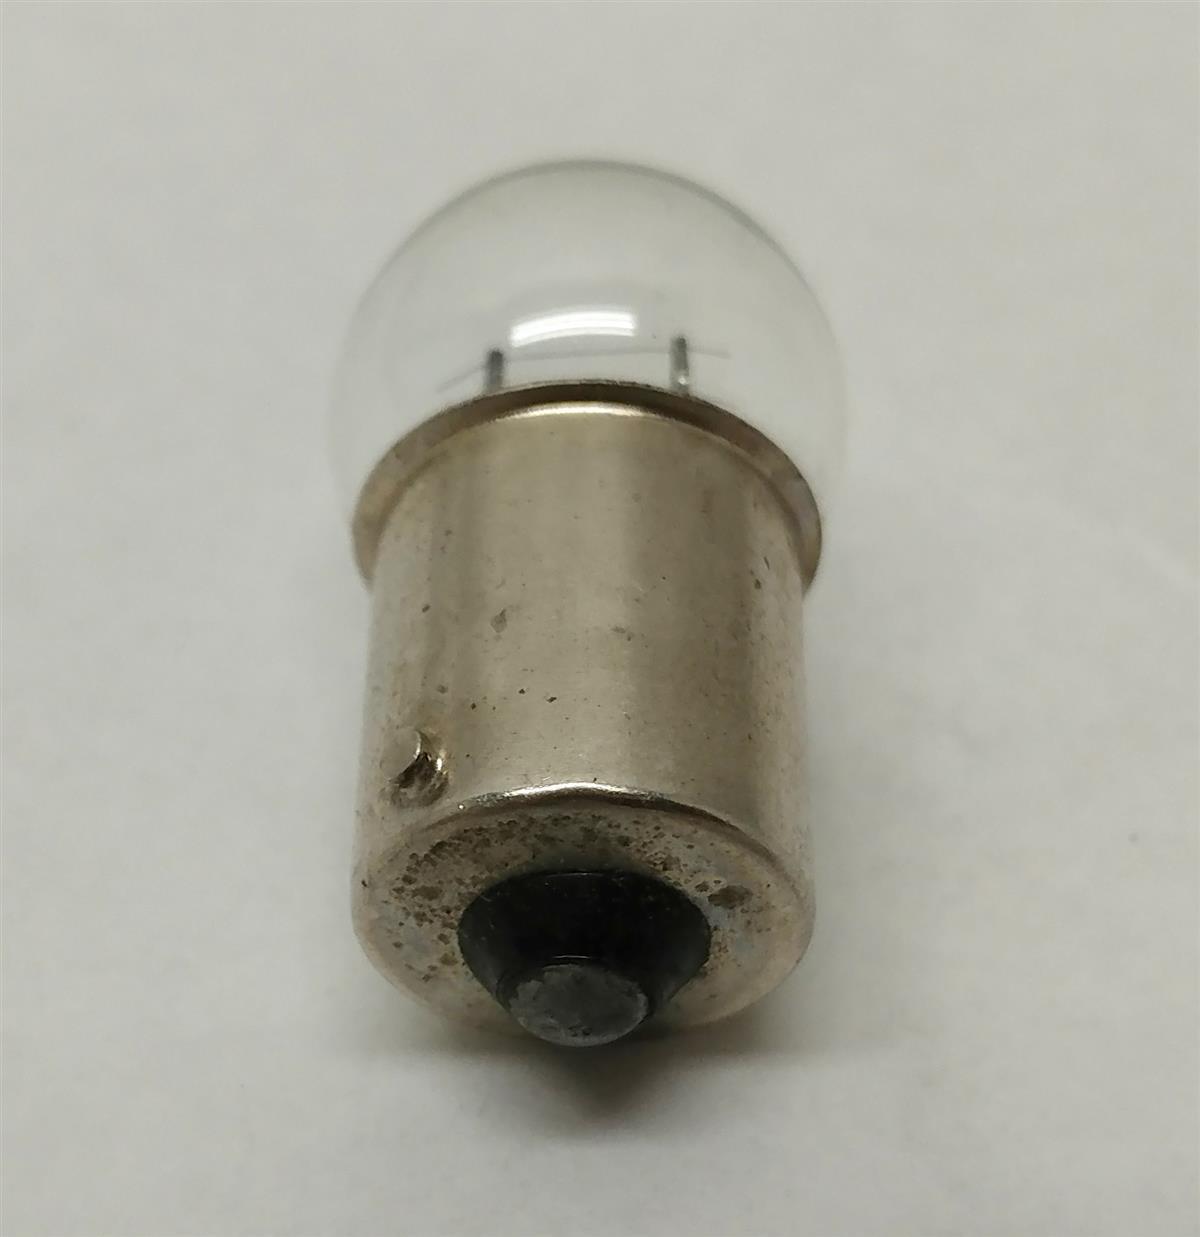 ALL-5231 | Black Out Light Bulb (3).jpg